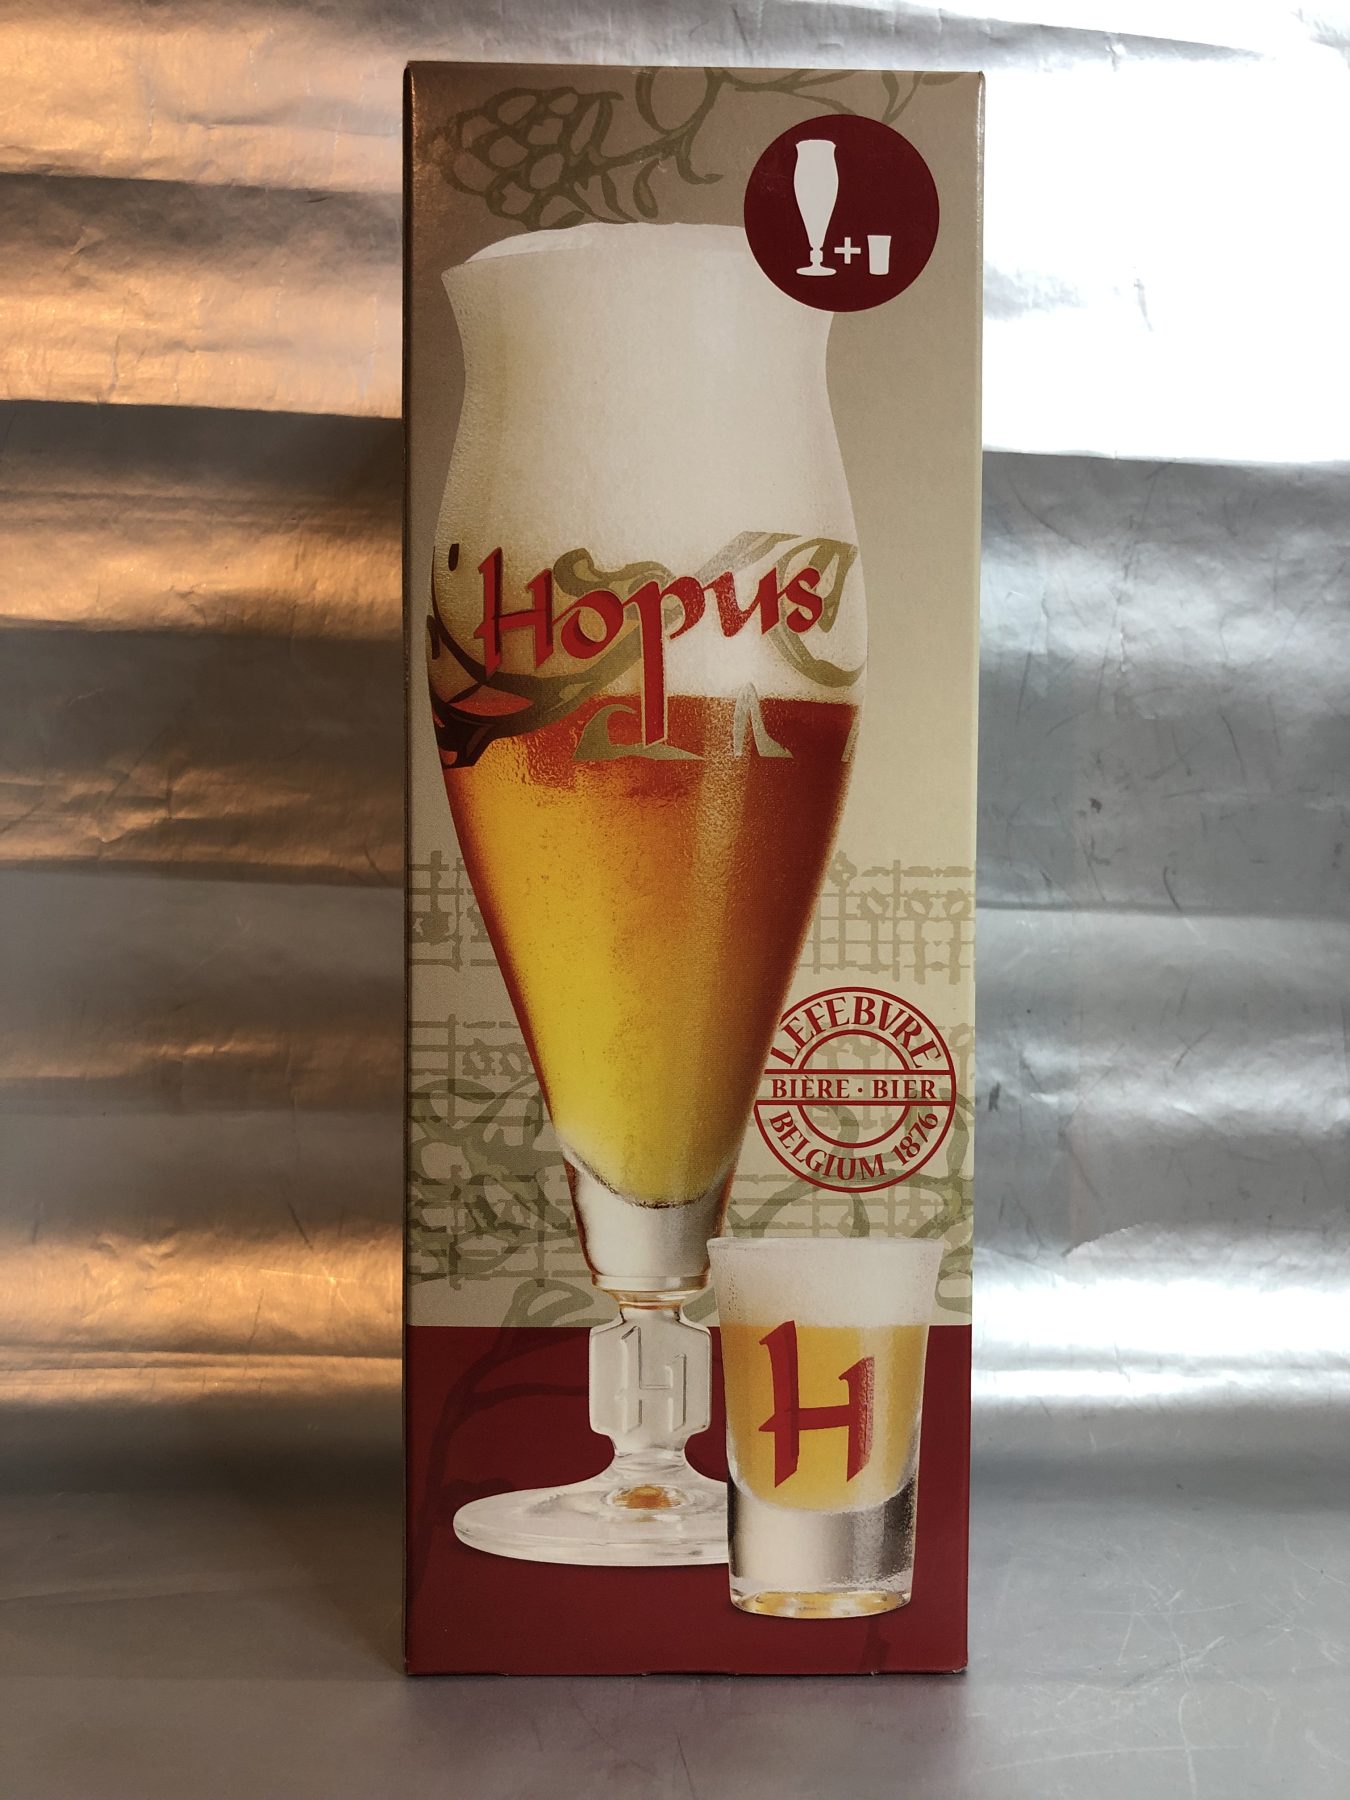 Hopus Blond beer